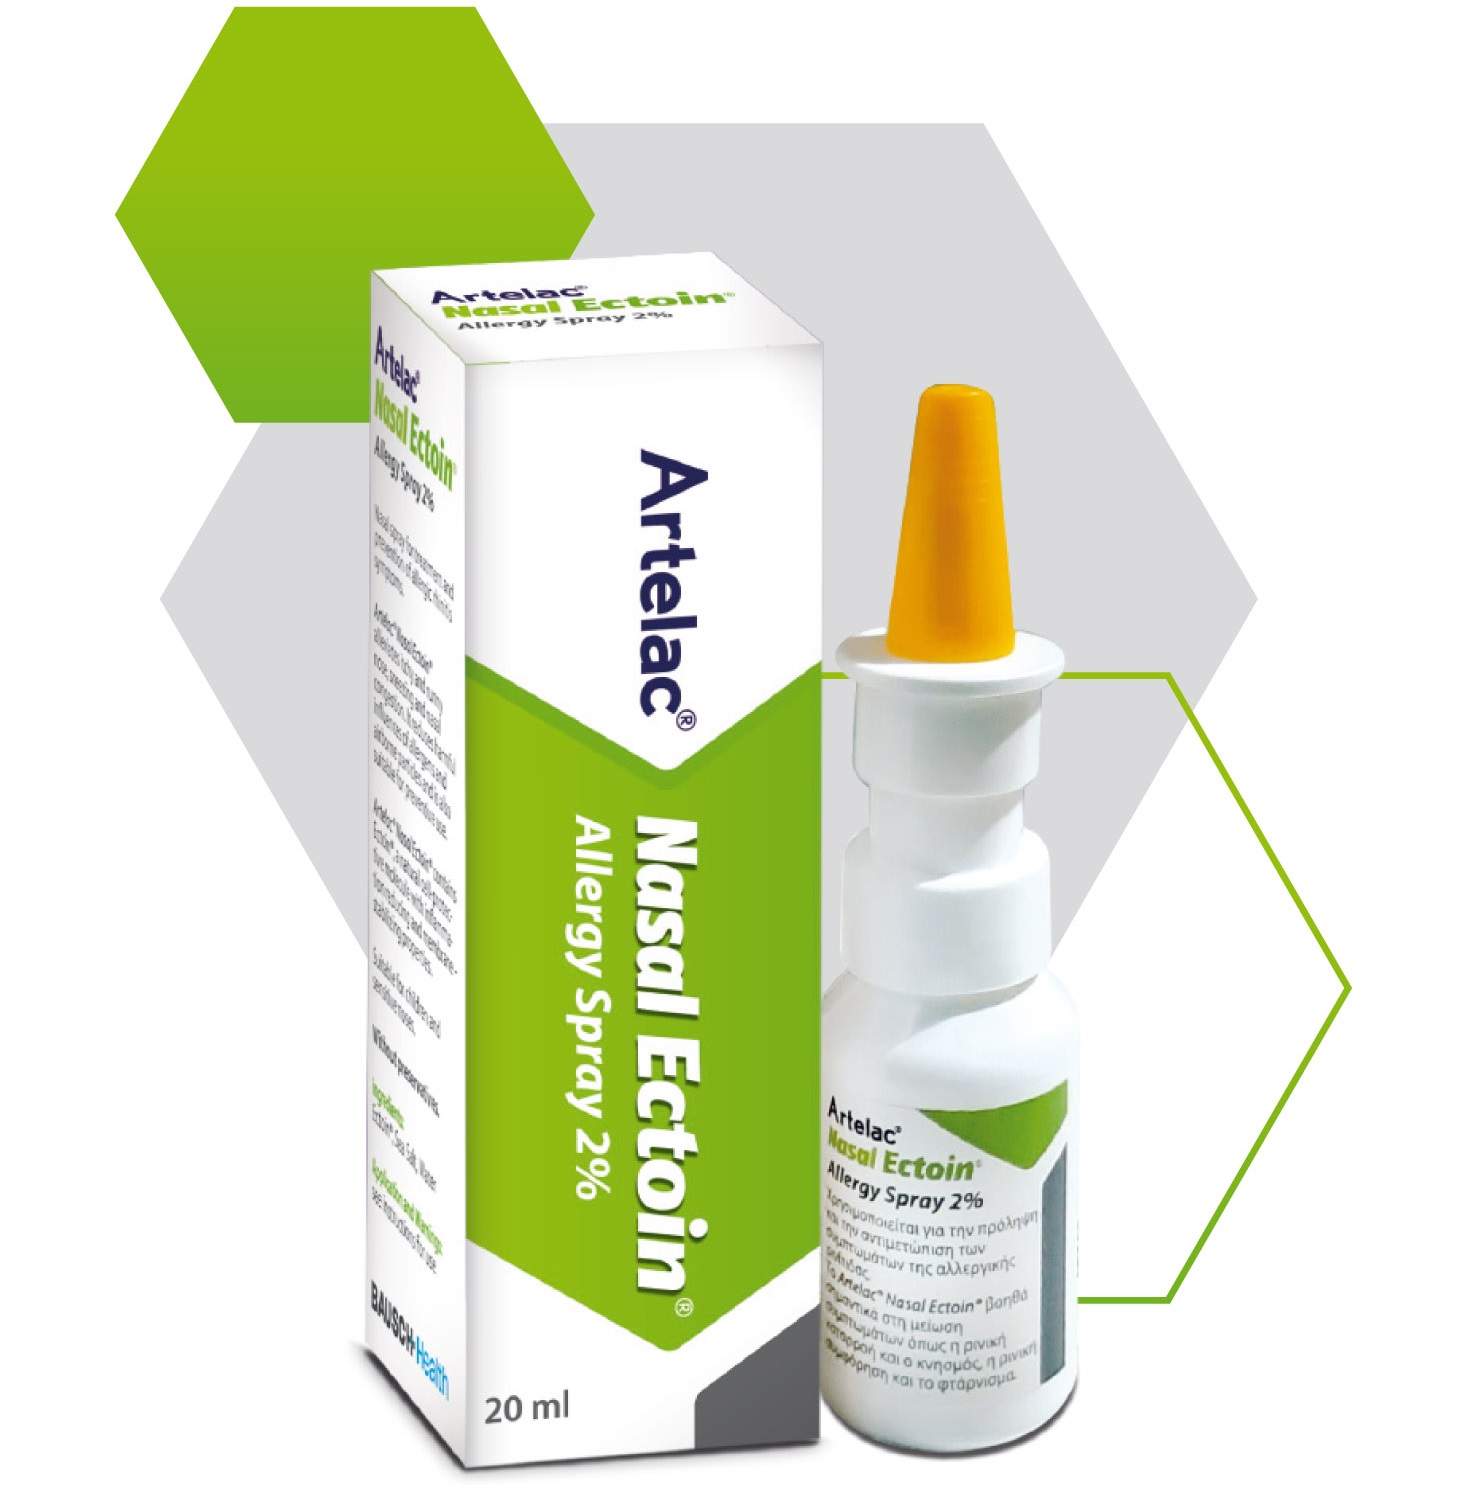 Το Artelac® Nasal Ectoin® χρησιμοποιείται για την πρόληψη και την αντιμετώπιση των συμπτωμάτων της αλλεργικής ρινίτιδας.